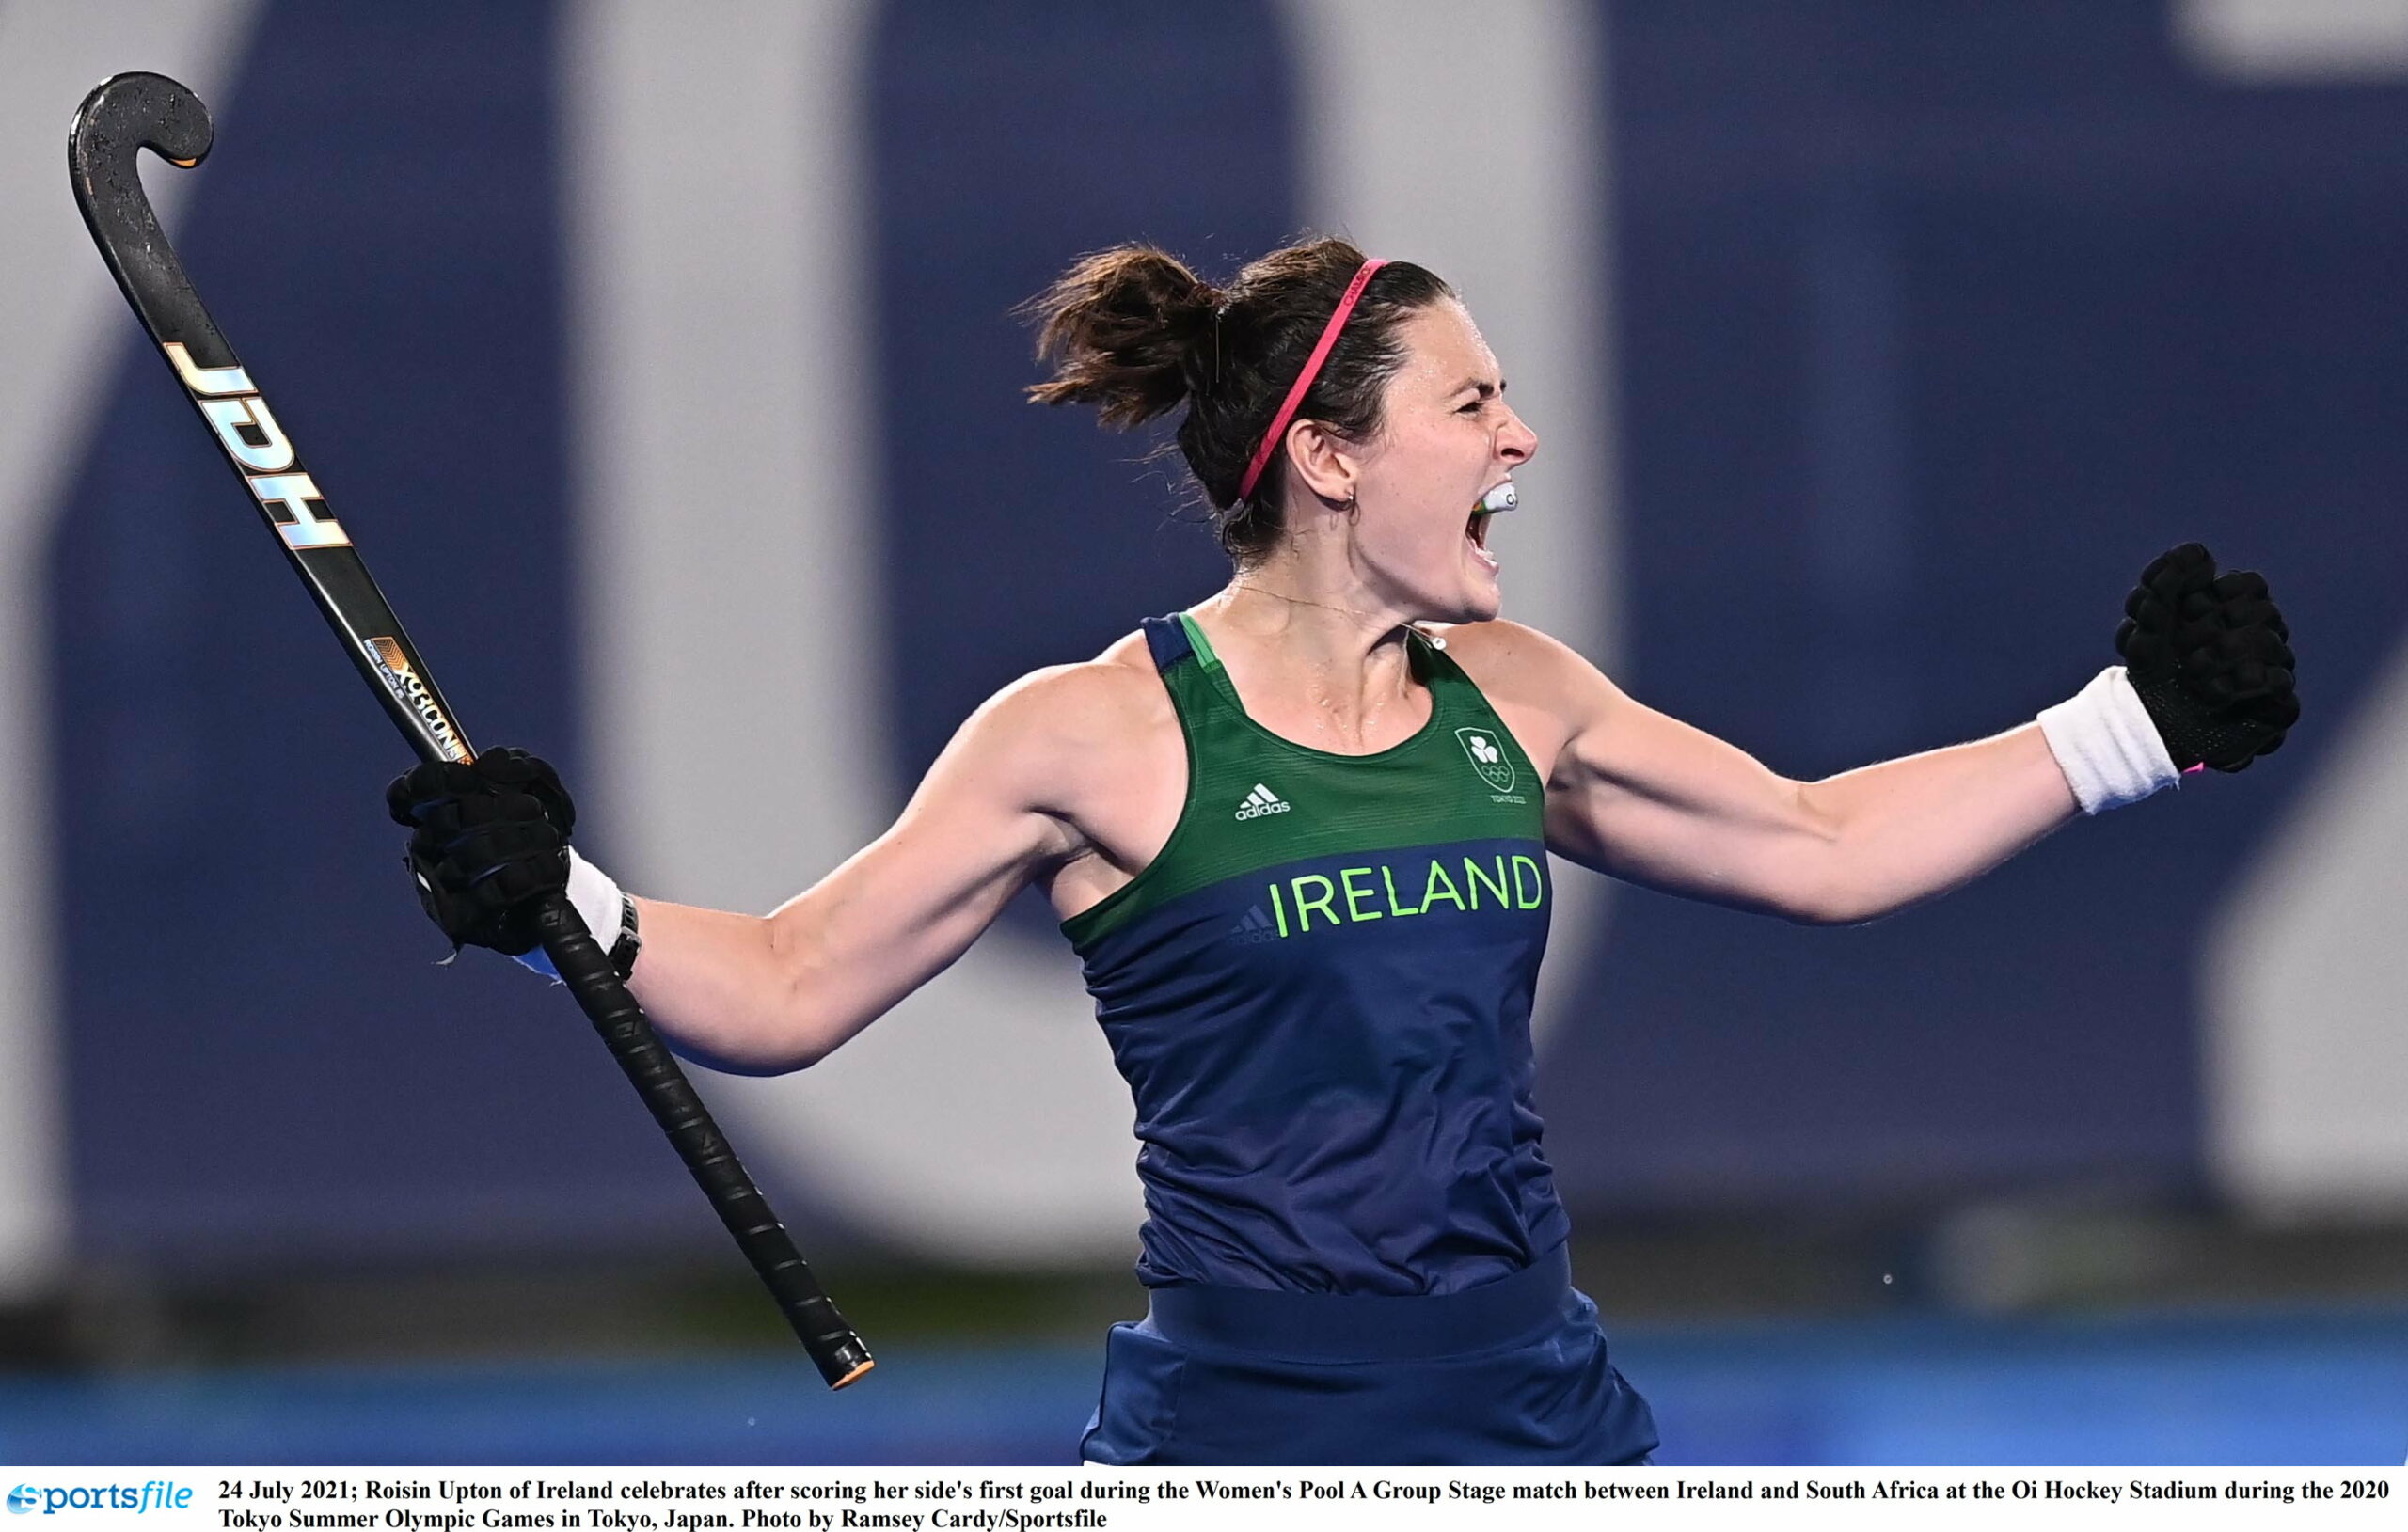 Tokyo Olympics Hockey: Ireland women ready to take on Holland